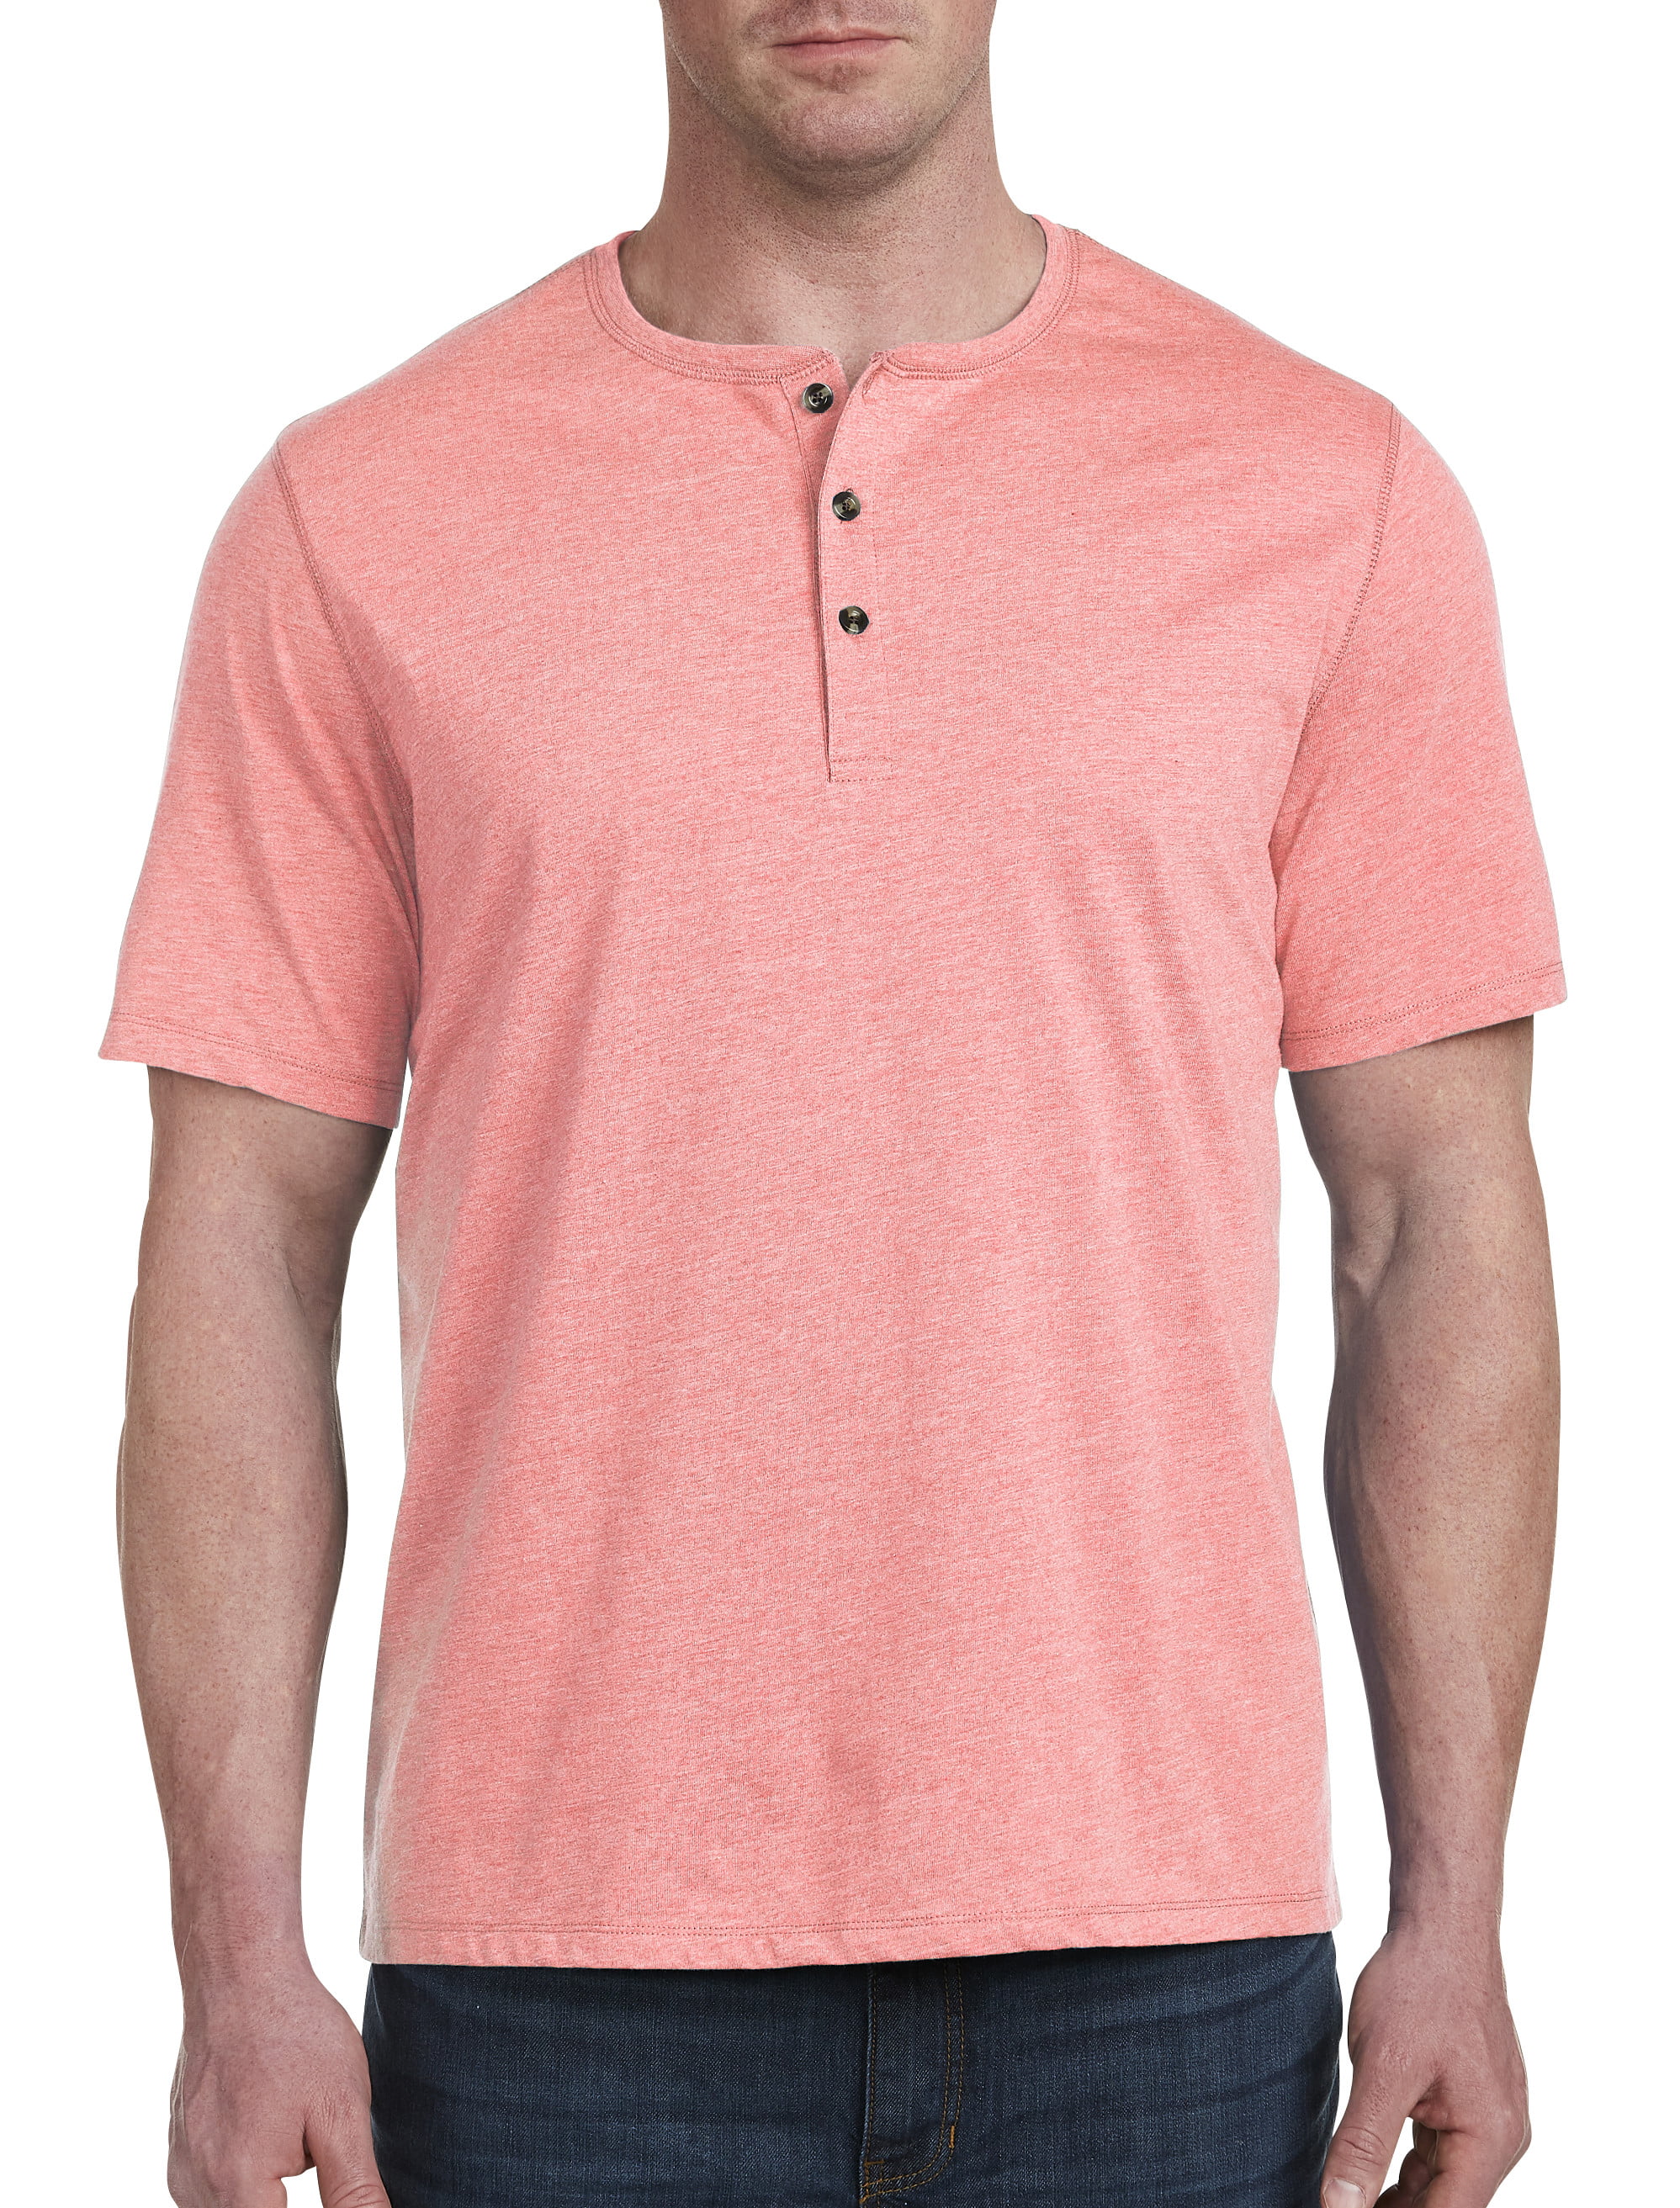 Essentials Men's Big & Tall Long-Sleeve Henley Shirt fit by DXL 